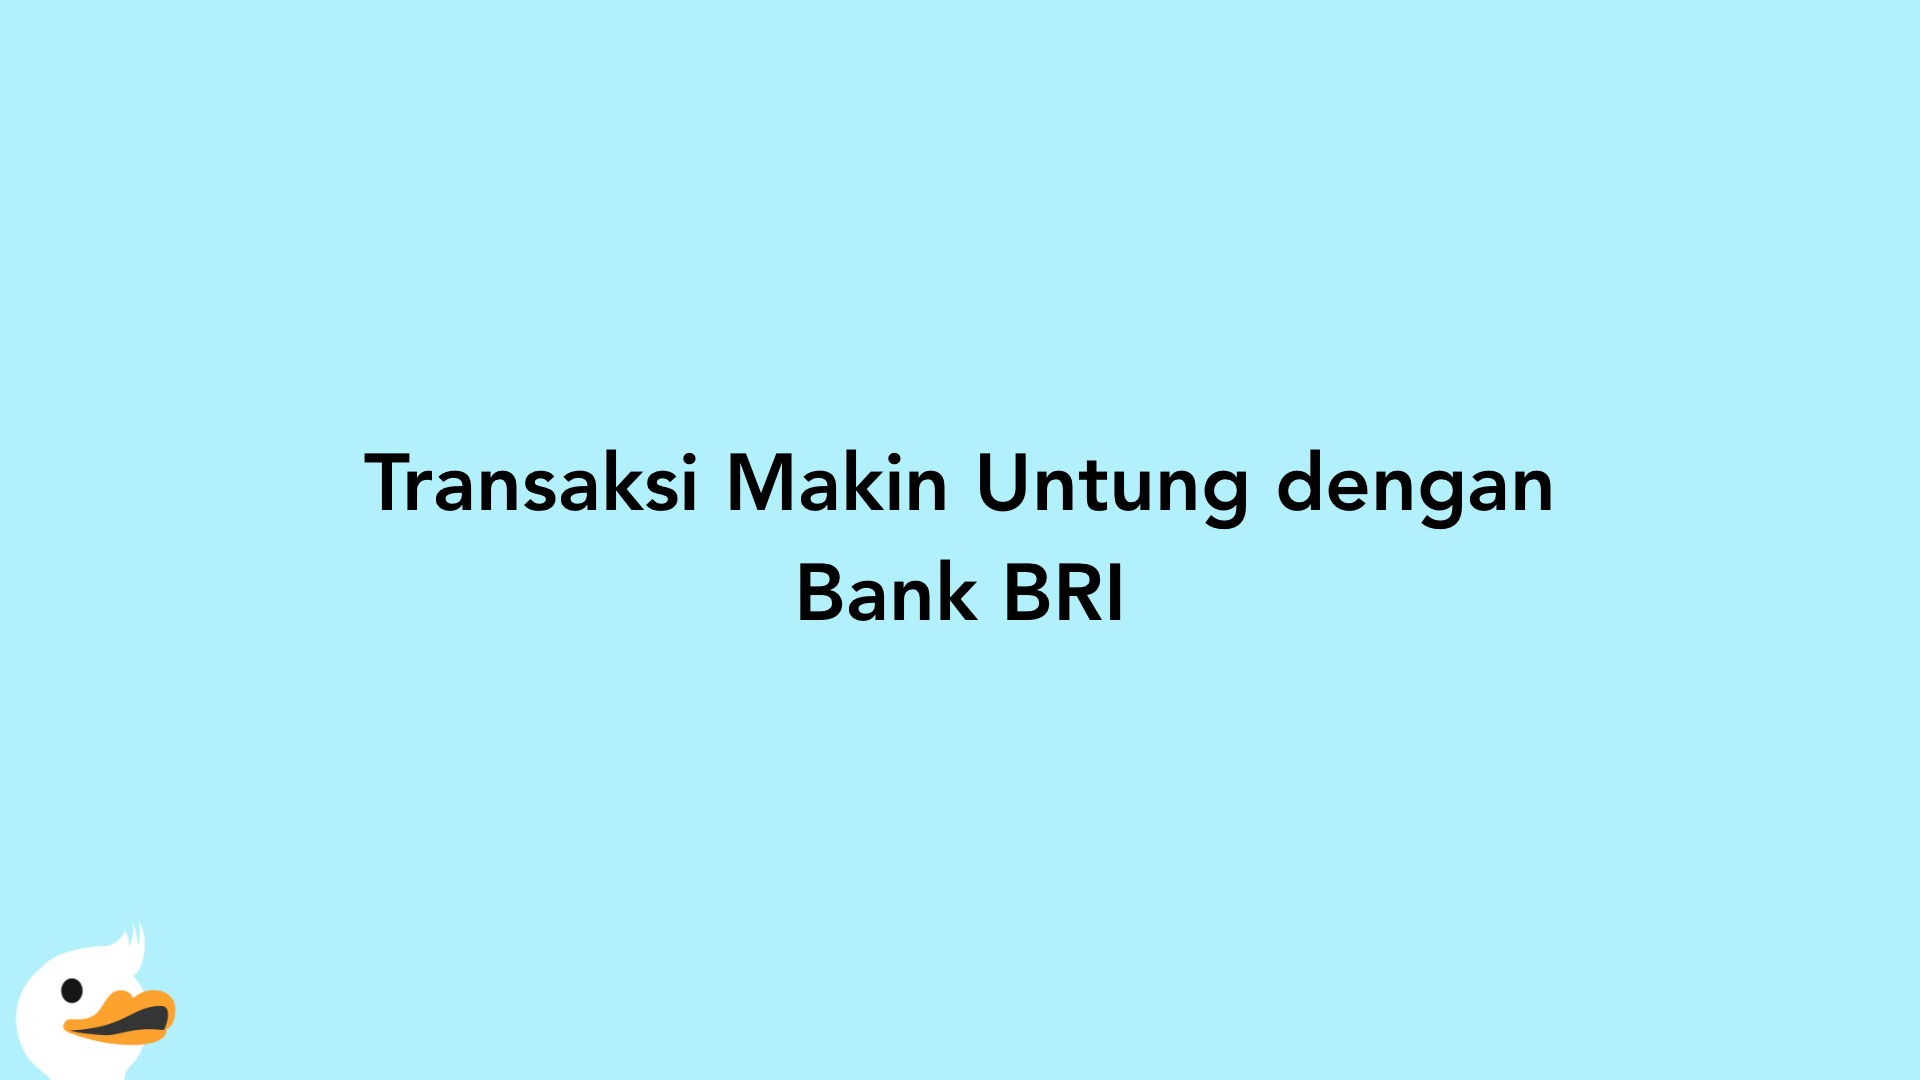 Transaksi Makin Untung dengan Bank BRI